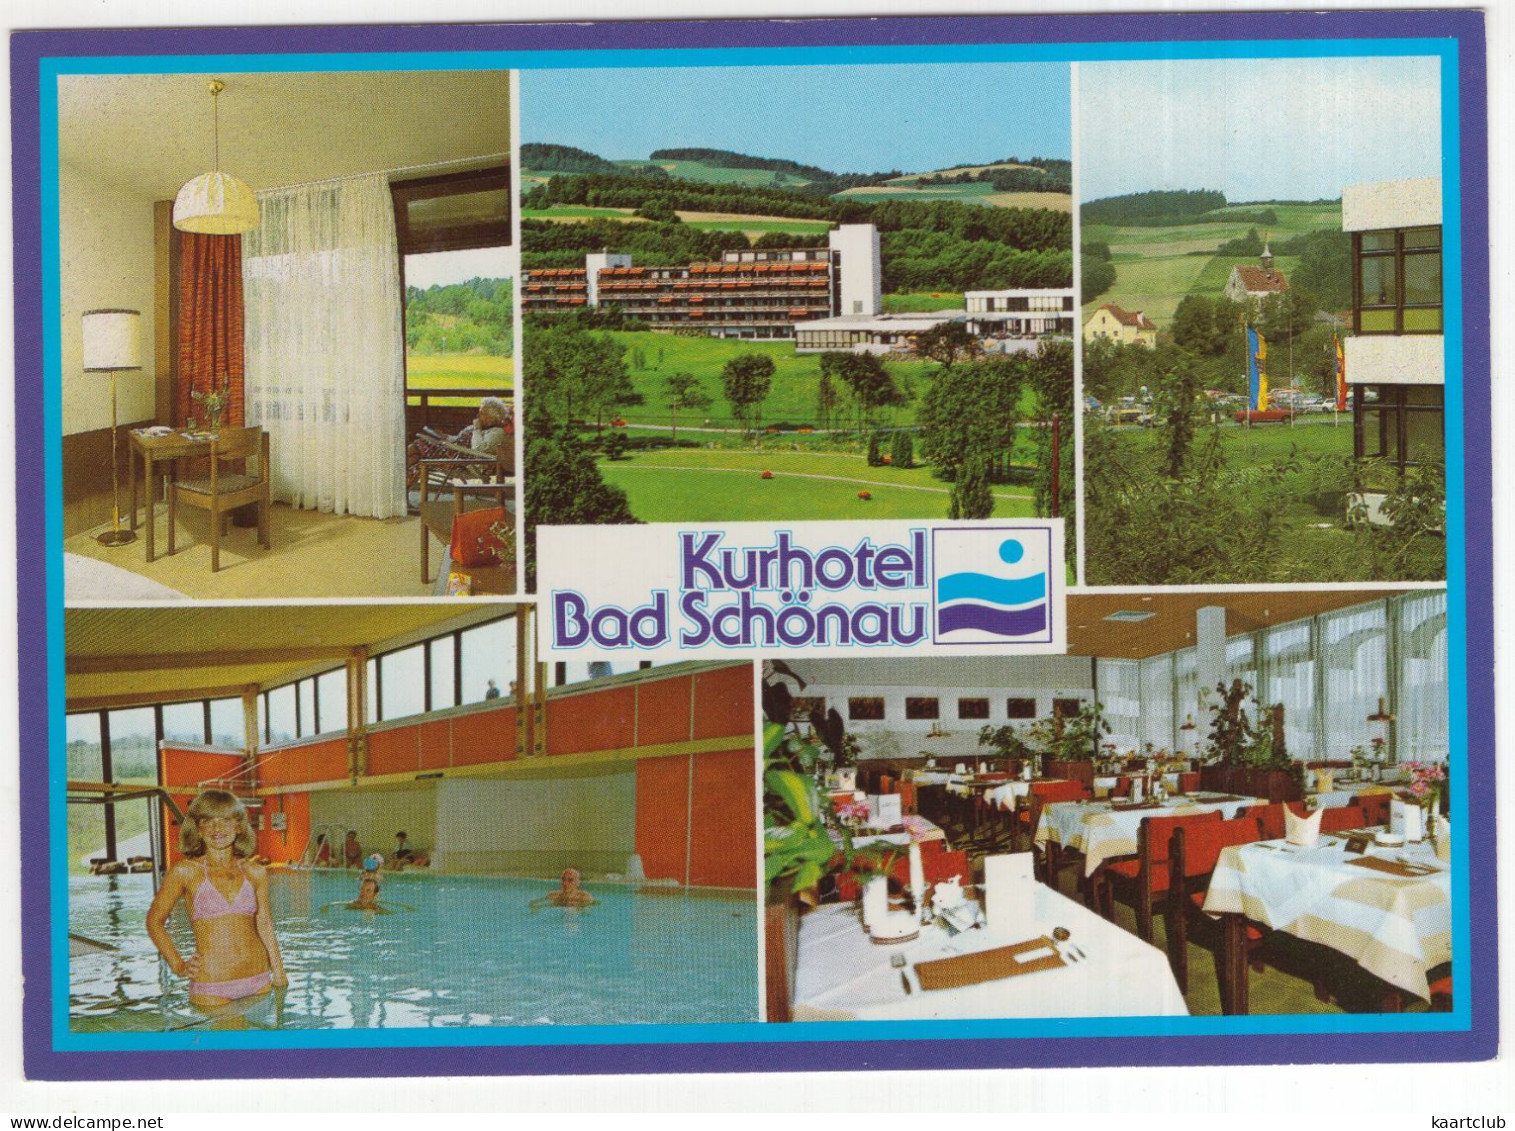 Bad Schönau, Bucklige Welt - Kurhotel, Am Kurpark 1 - (NÖ, Österreich/Austria) - Hallenbad - Wiener Neustadt